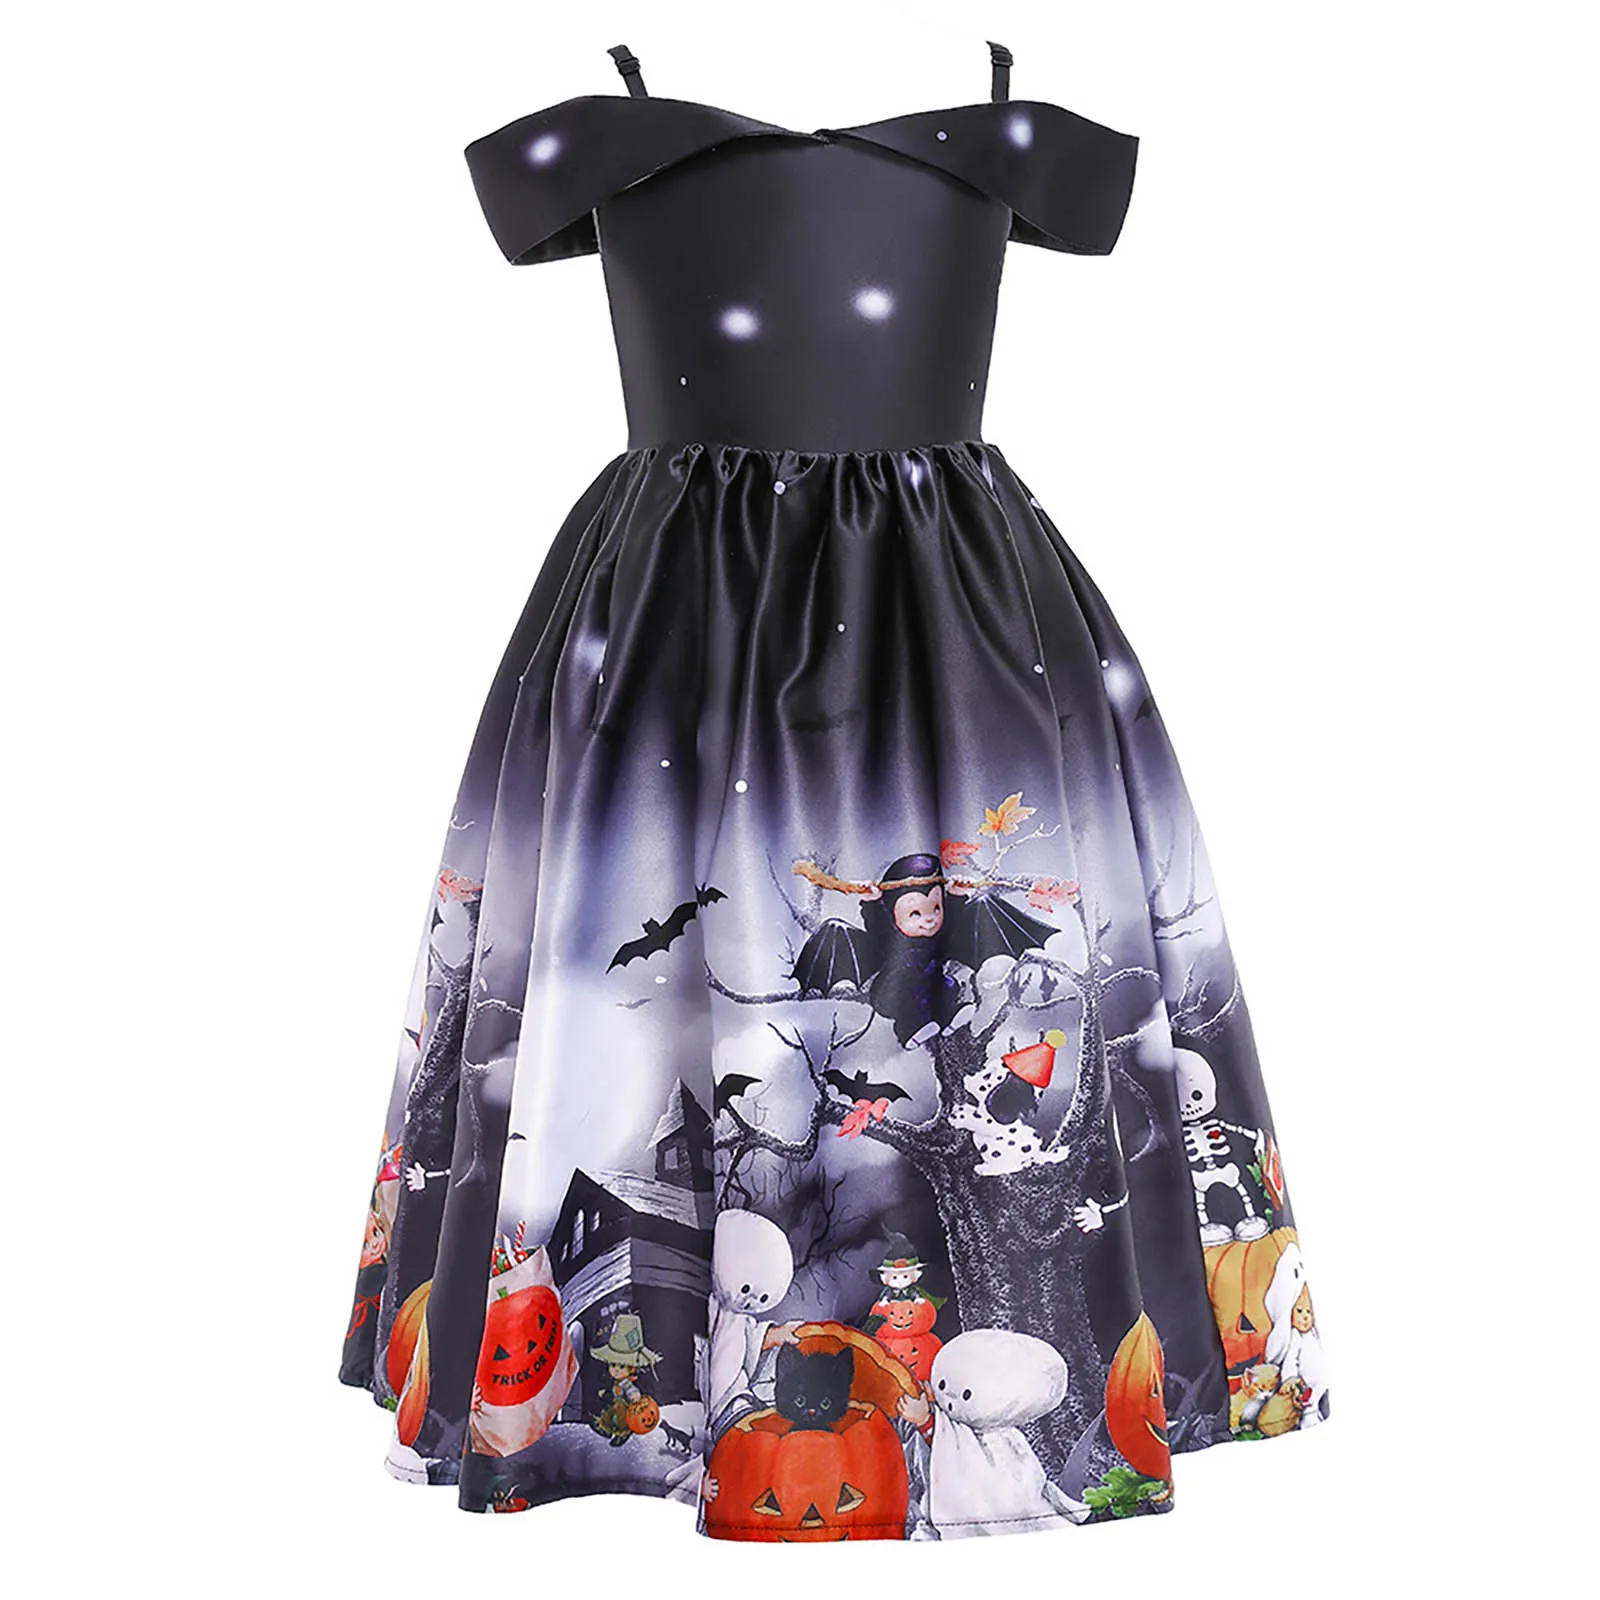 Çocuk Kız Cadılar Bayramı Elbise süslü elbise Kostümleri Kabak Baskı Dantel Patchwork Saten Elbise Prenses Elbise Akşam Parti Balo elbisesi Görüntü 3